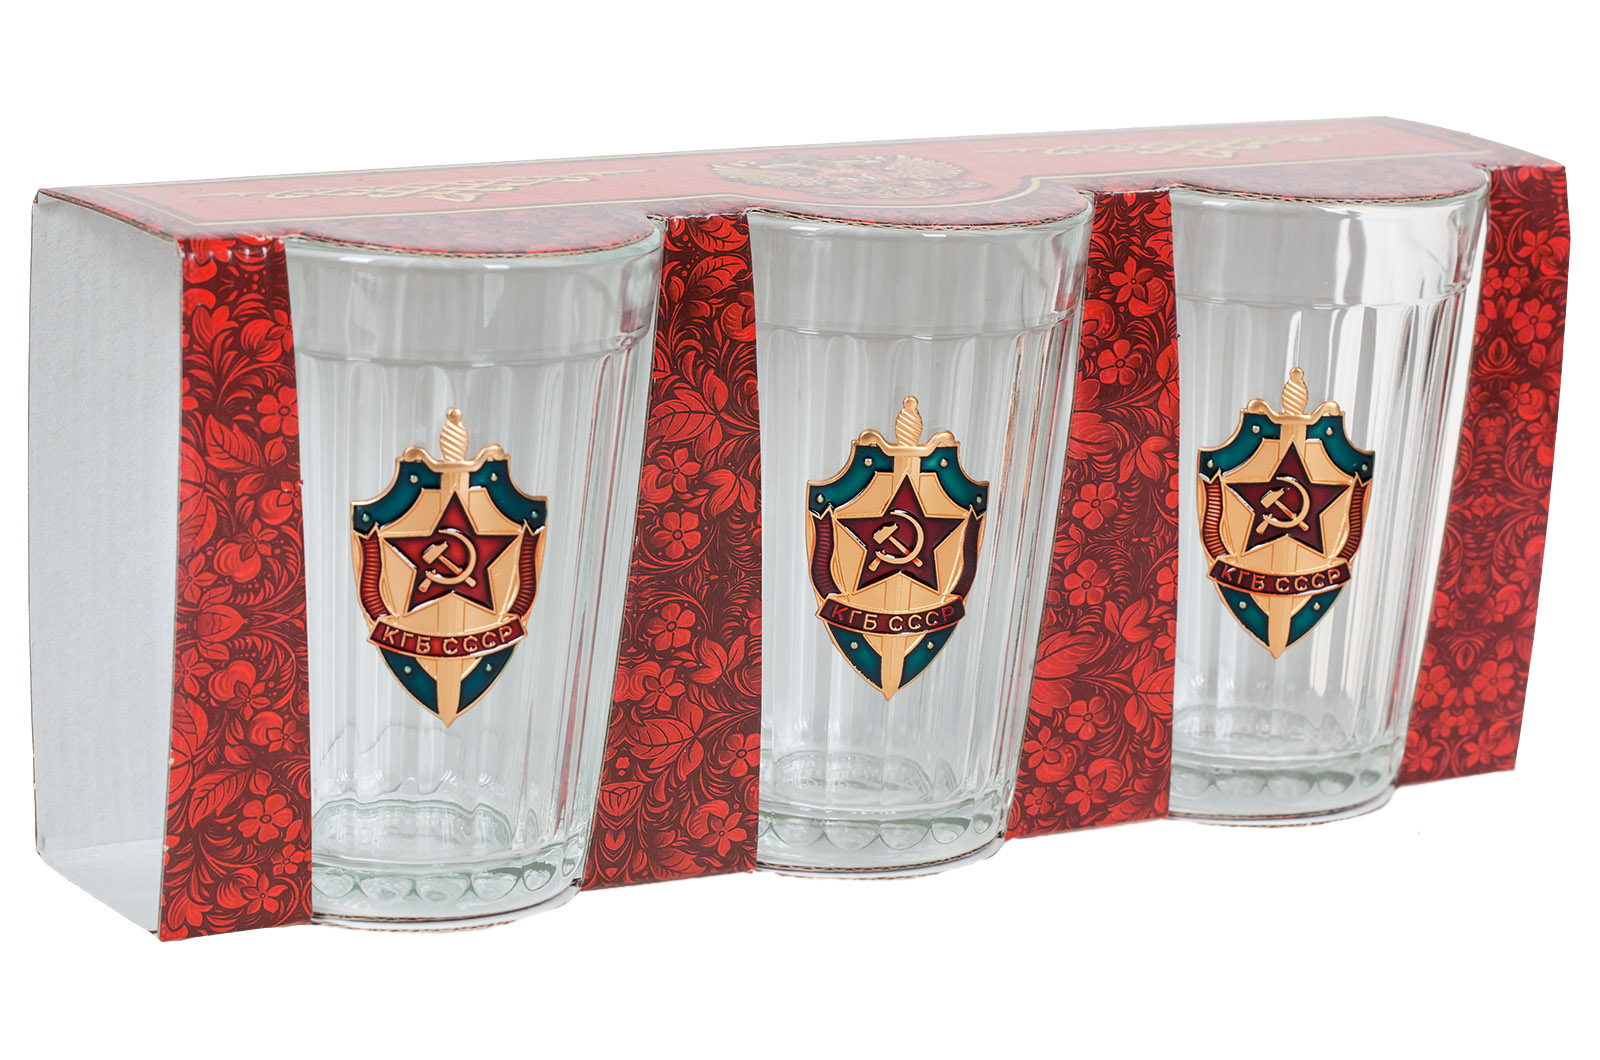 Заказать онлайн недорого набор стаканов КГБ СССР с доставкой